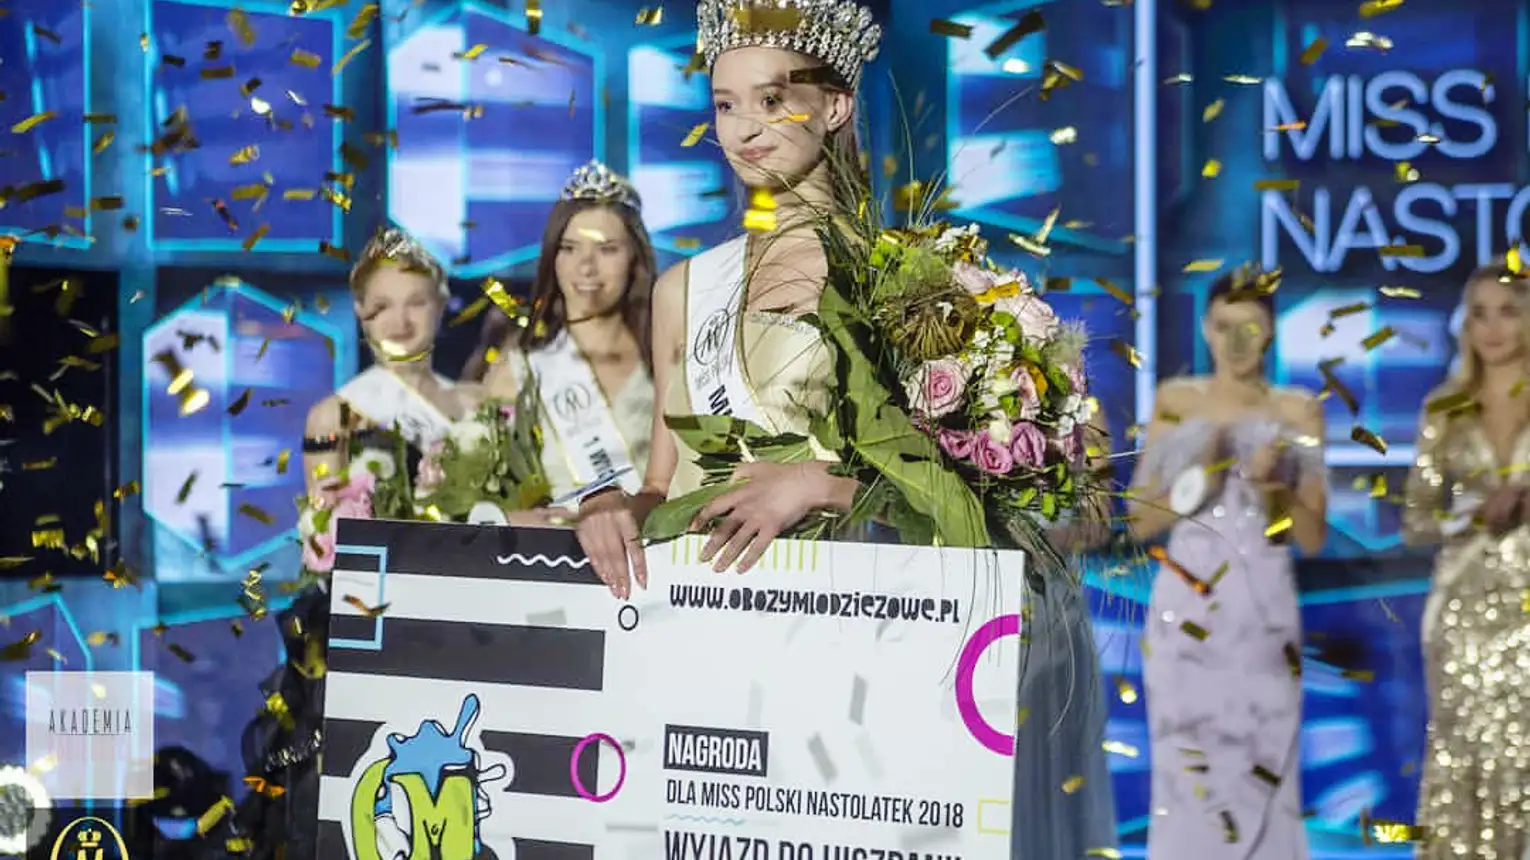 Zuzanna Poteraj Miss Polski Nastolatek 2018 Foto